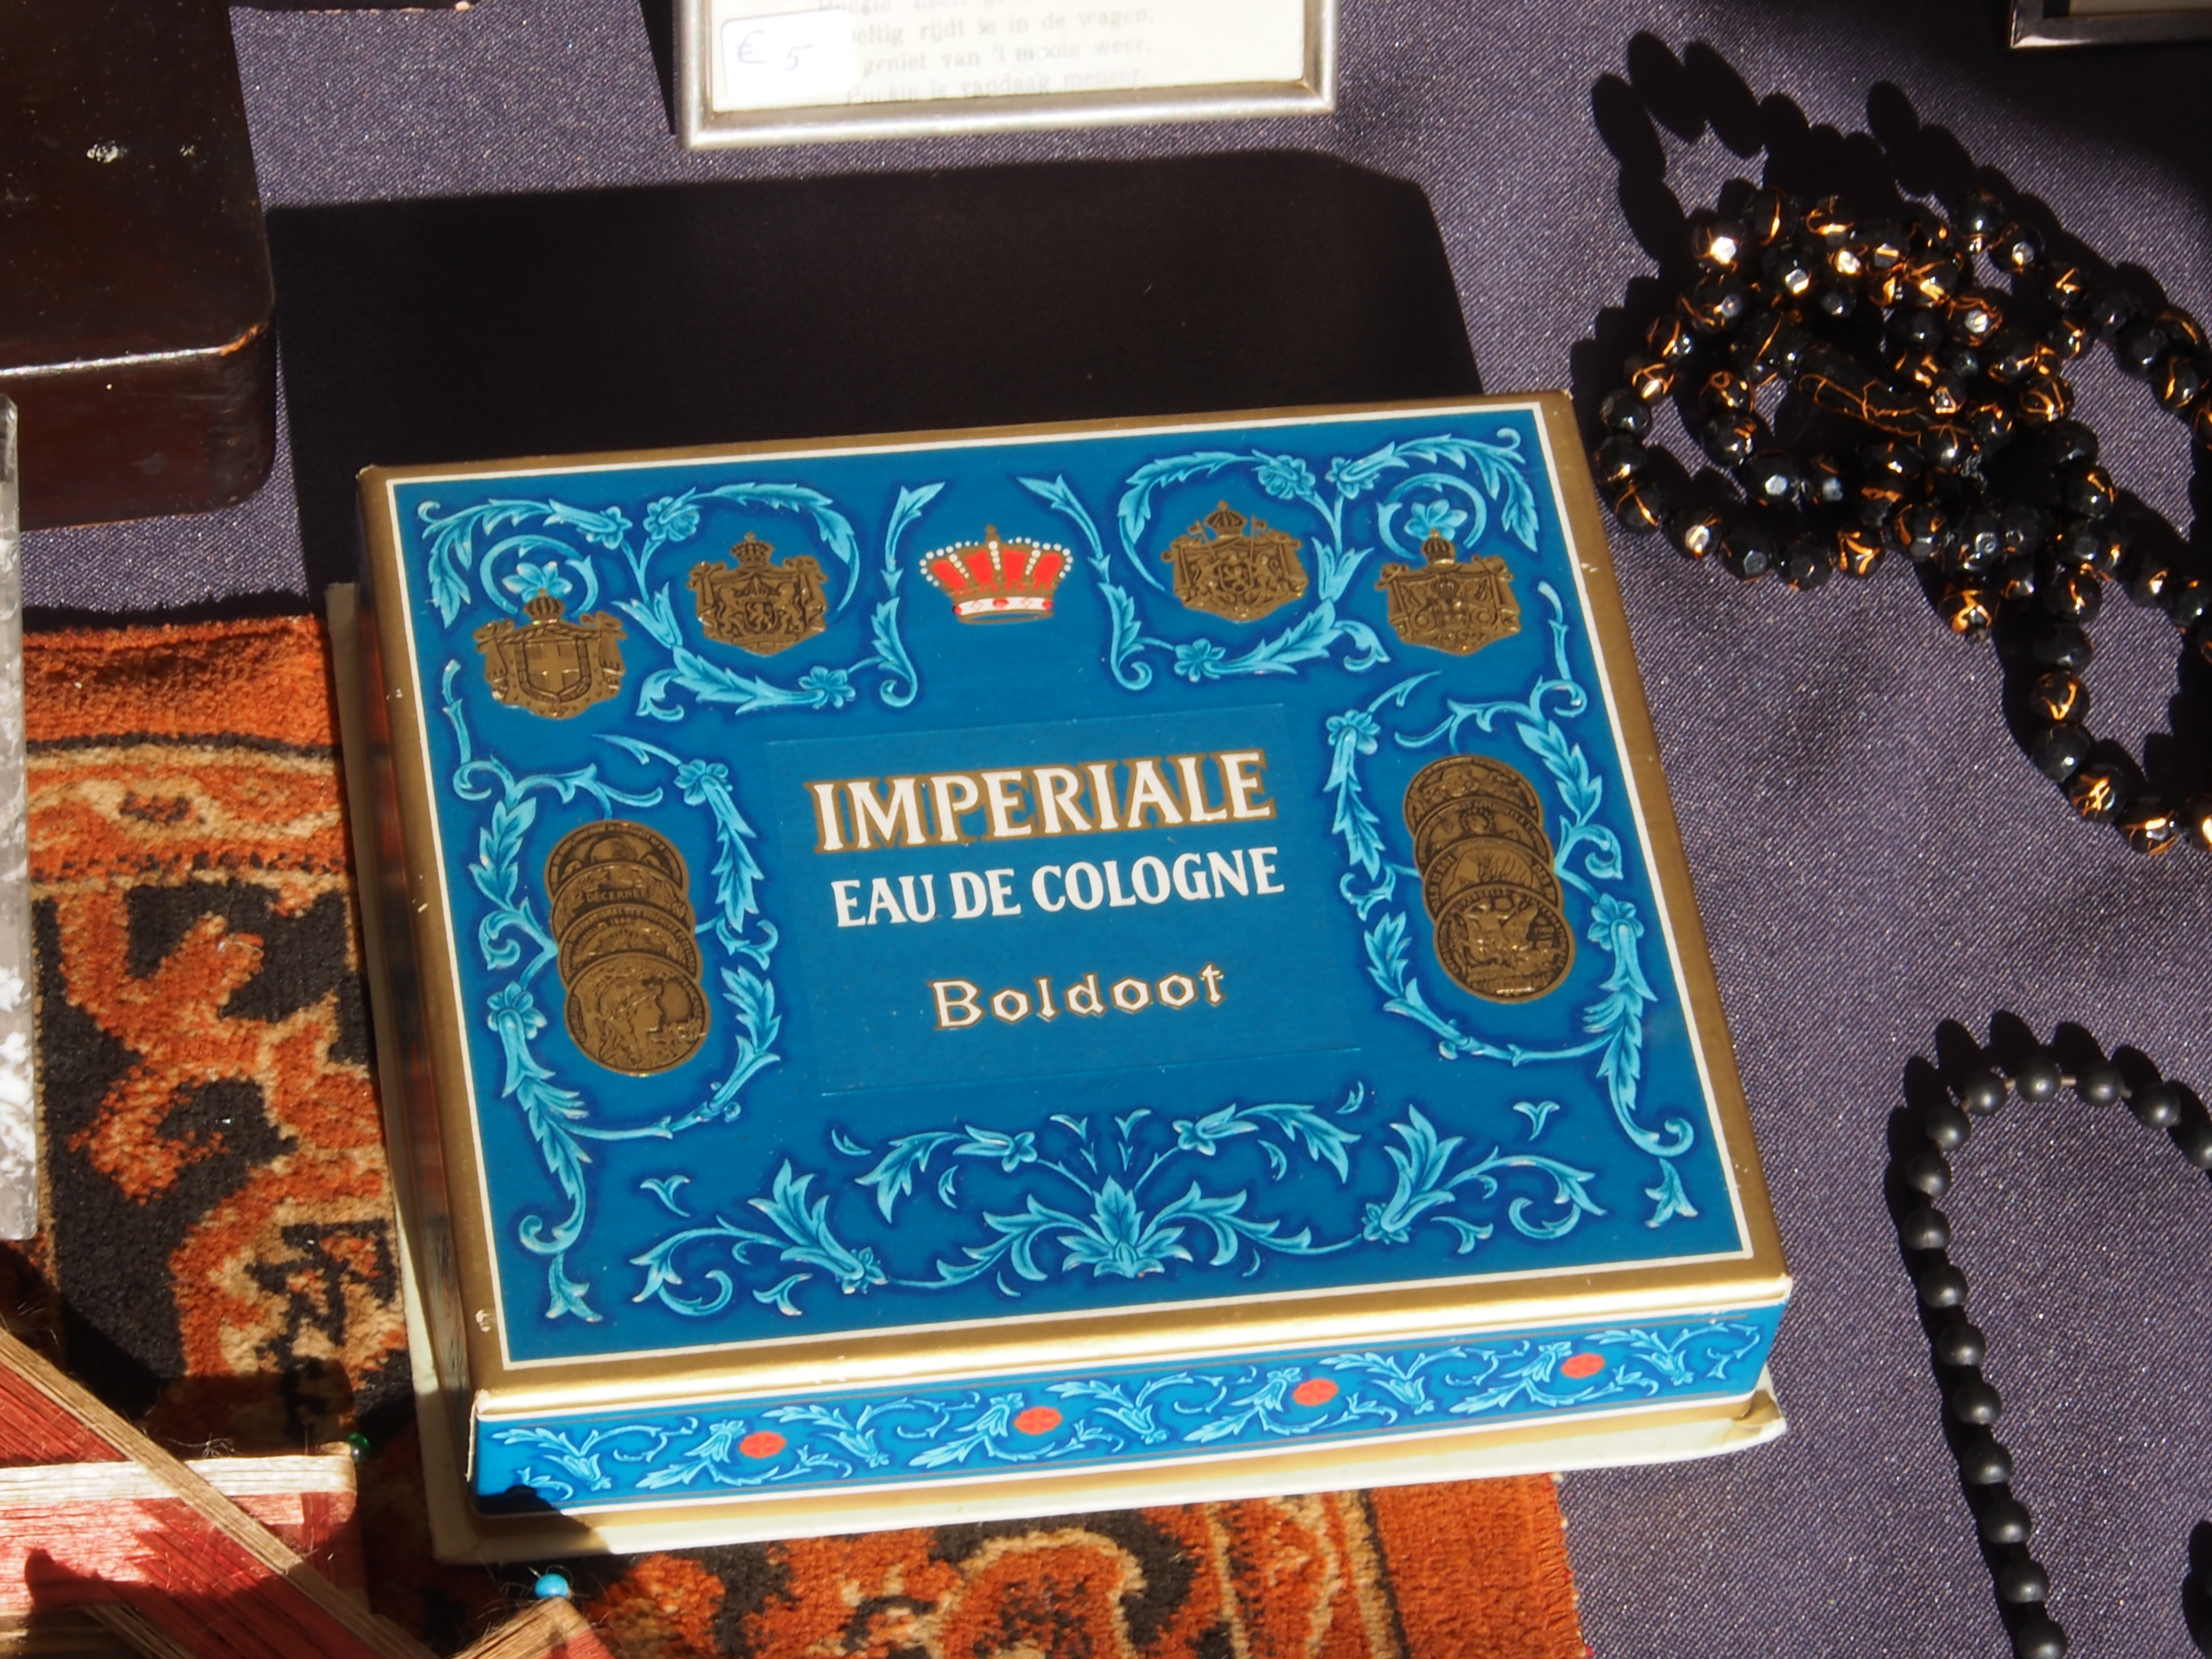 Imperiale Eau de Cologne, Boldoot box